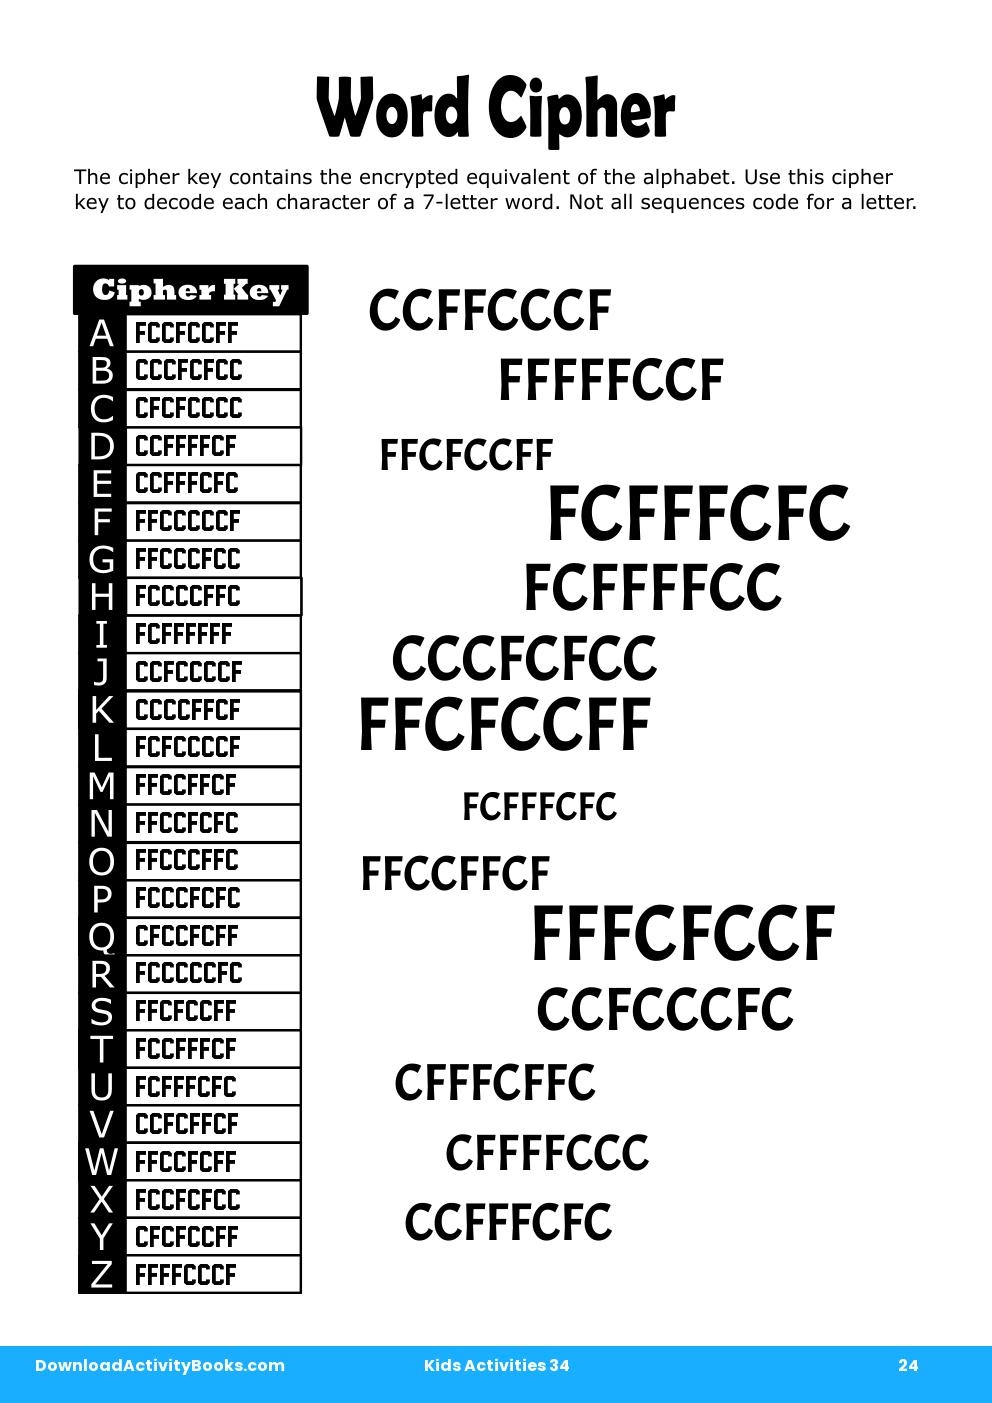 Word Cipher in Kids Activities 34